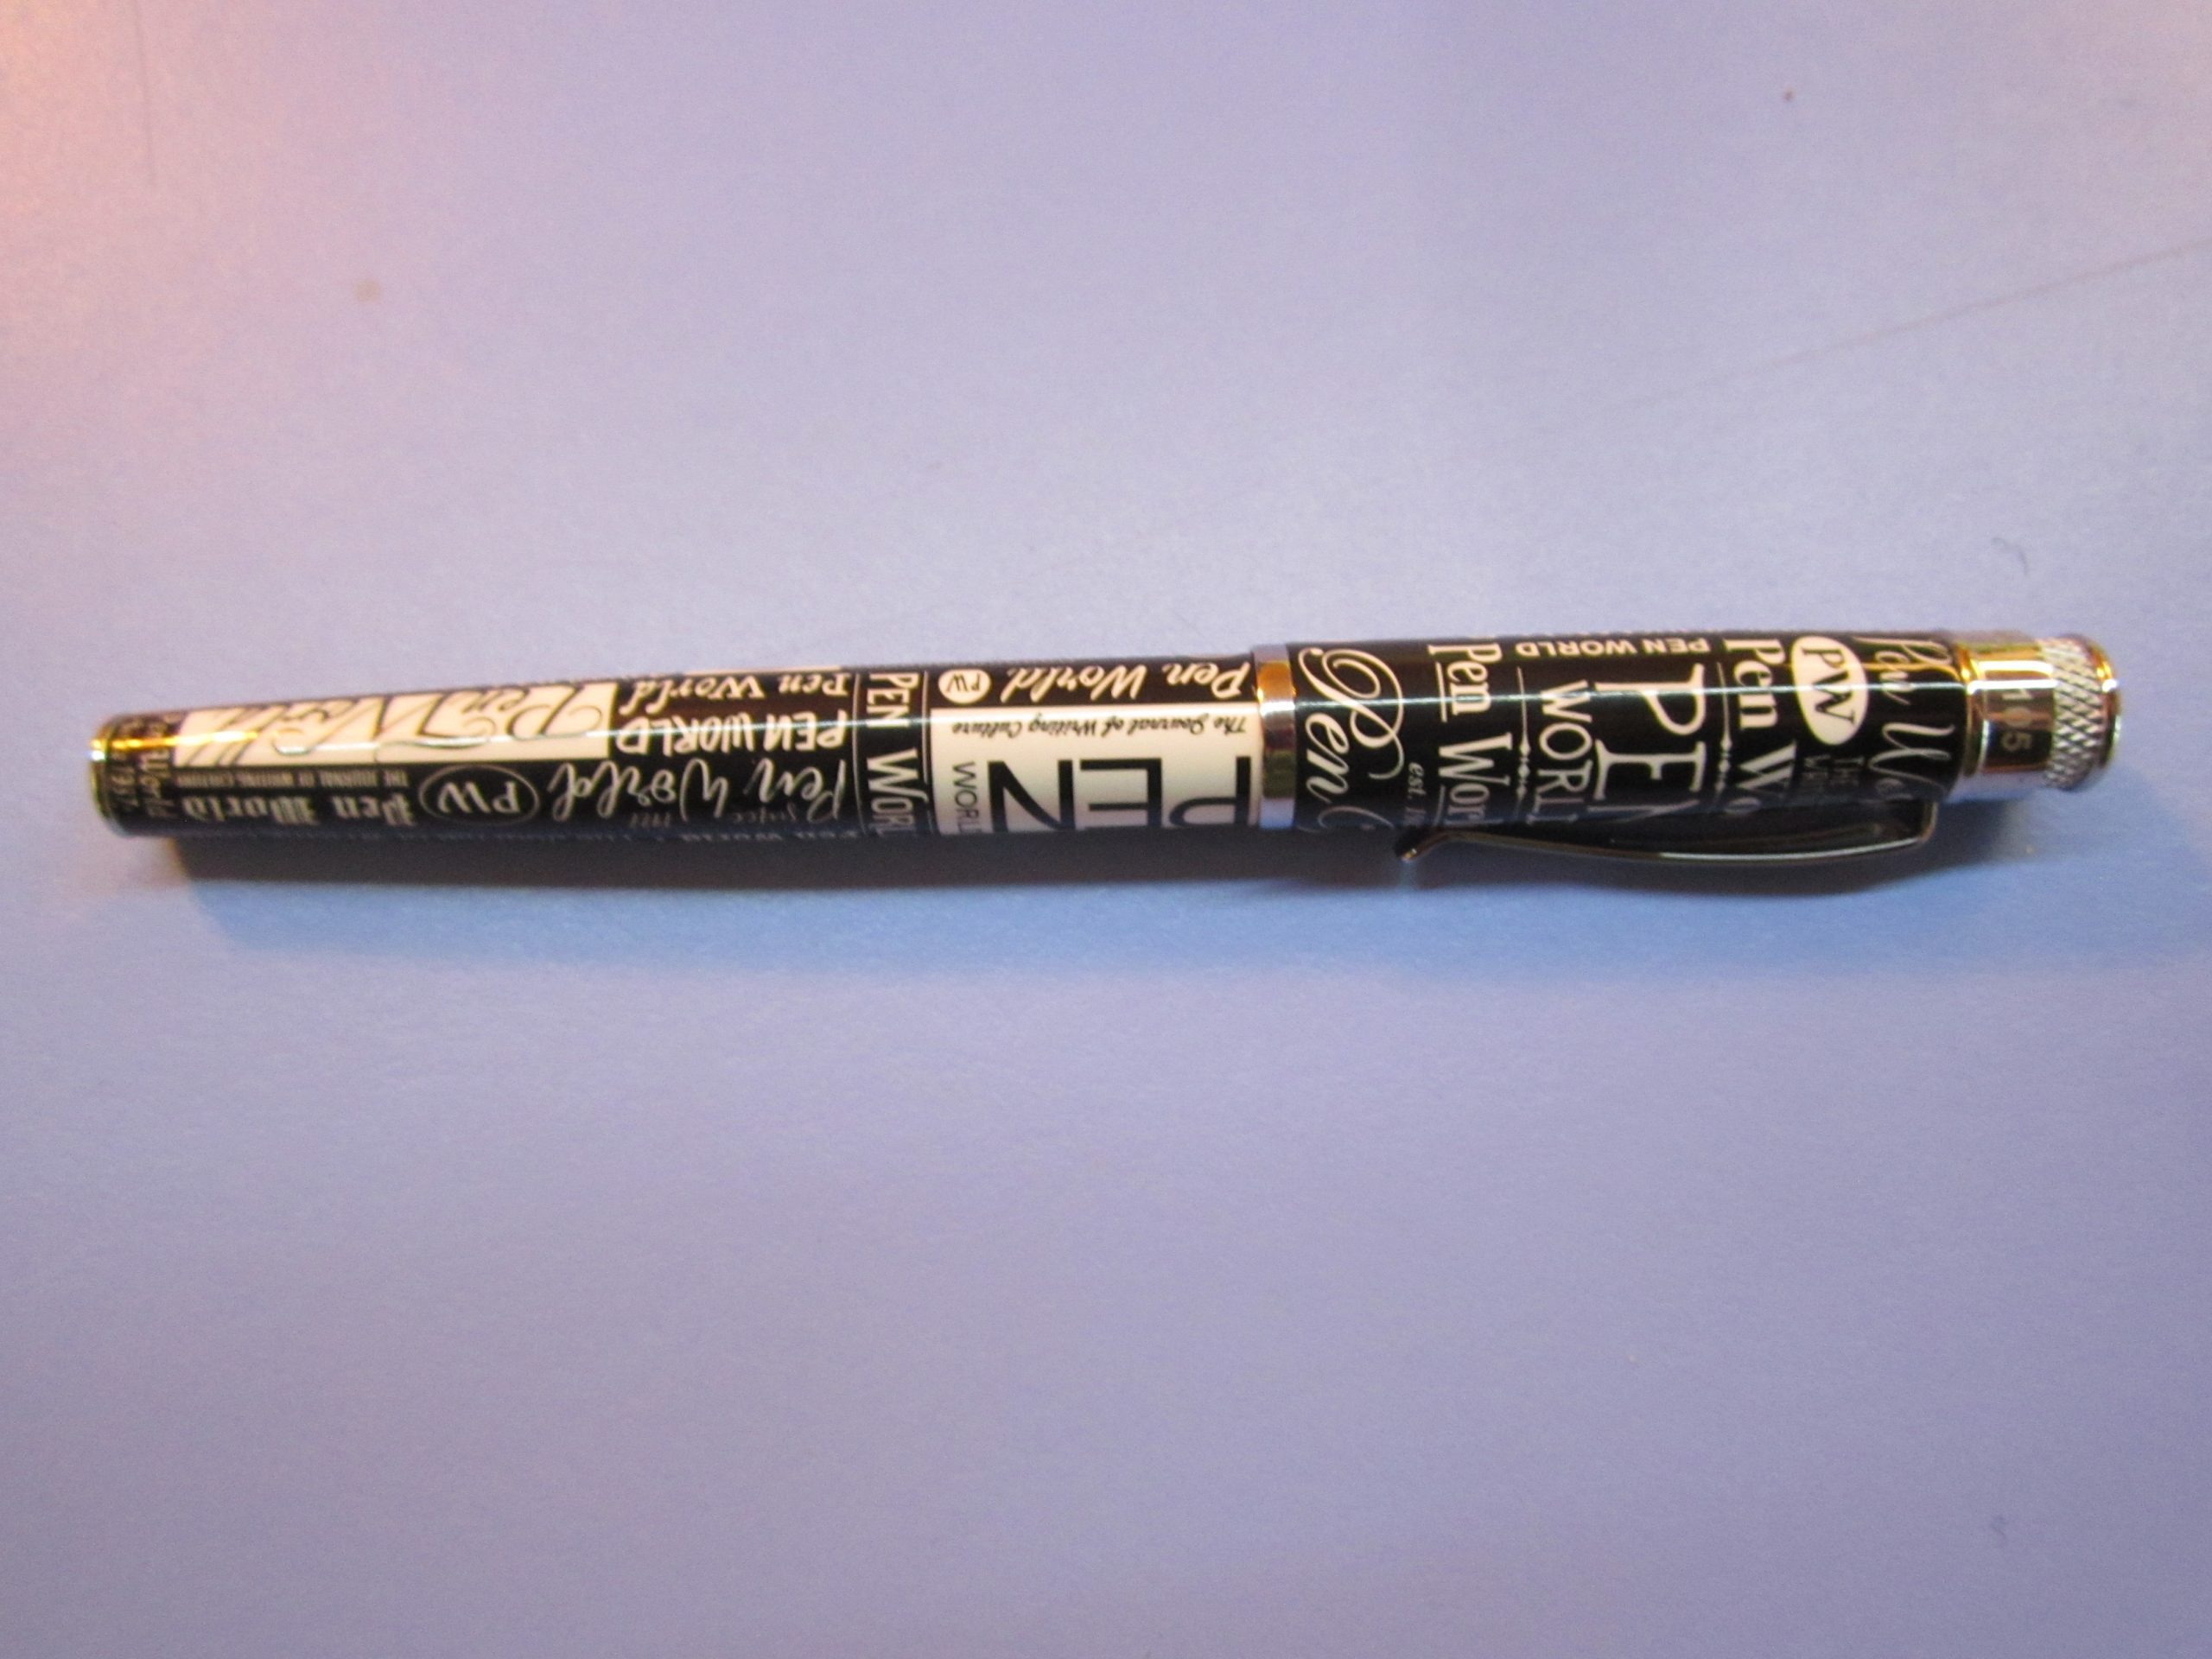 Pen Pencil Review Retro 1951 Tornado Fountain Pen Pen World Edition Rhonda Eudaly